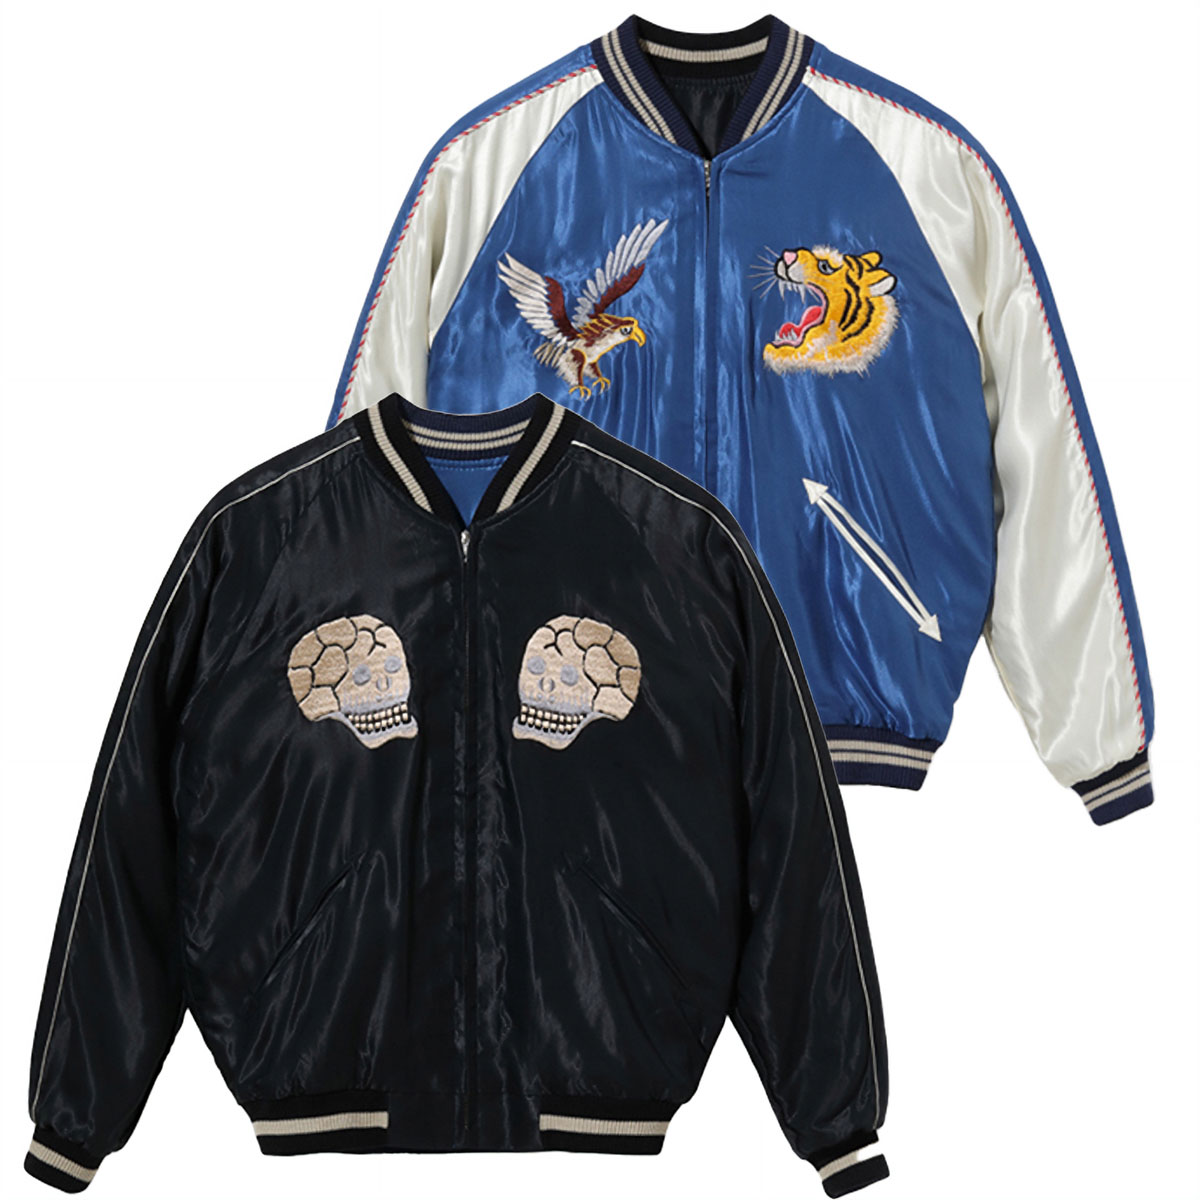 テーラー東洋 スカジャン Lot No. TT15282-125 / Mid 1950s Style Acetate Souvenir Jacket  “ROARING TIGER” × “SPIDERWEB, SNAKE AND SKULL”